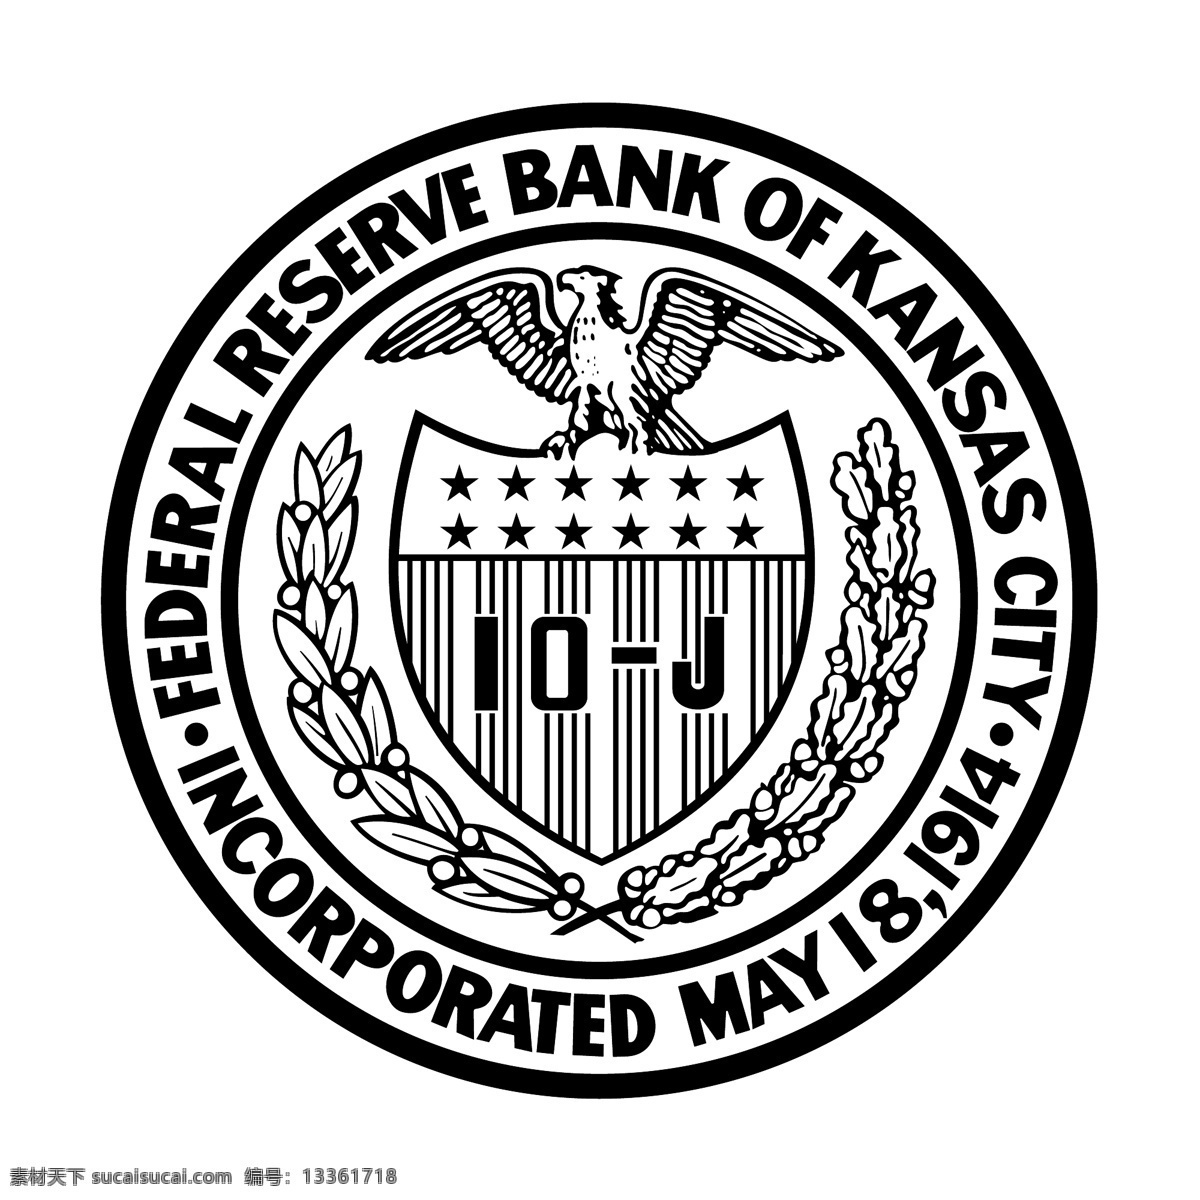 堪萨斯 联邦 储备 银行 联邦储备 储备银行 堪萨斯银行 联邦银行 矢量联邦银行 标志 第一联邦银行 联邦商业银行 矢量 向量 蓝色